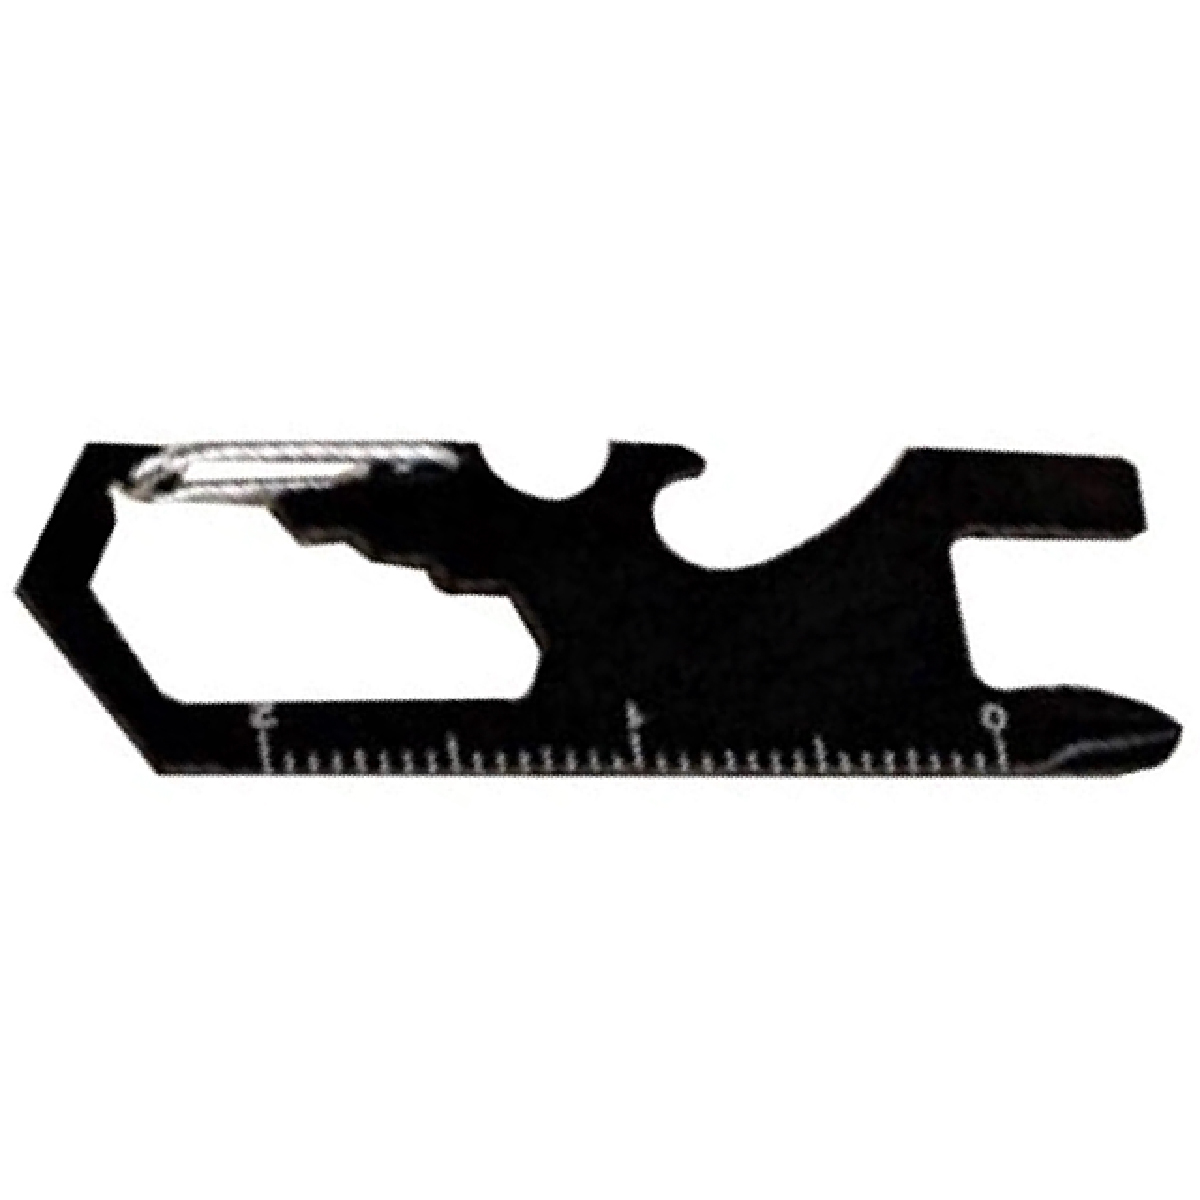 Black Metal Carabiner Multi-Tool